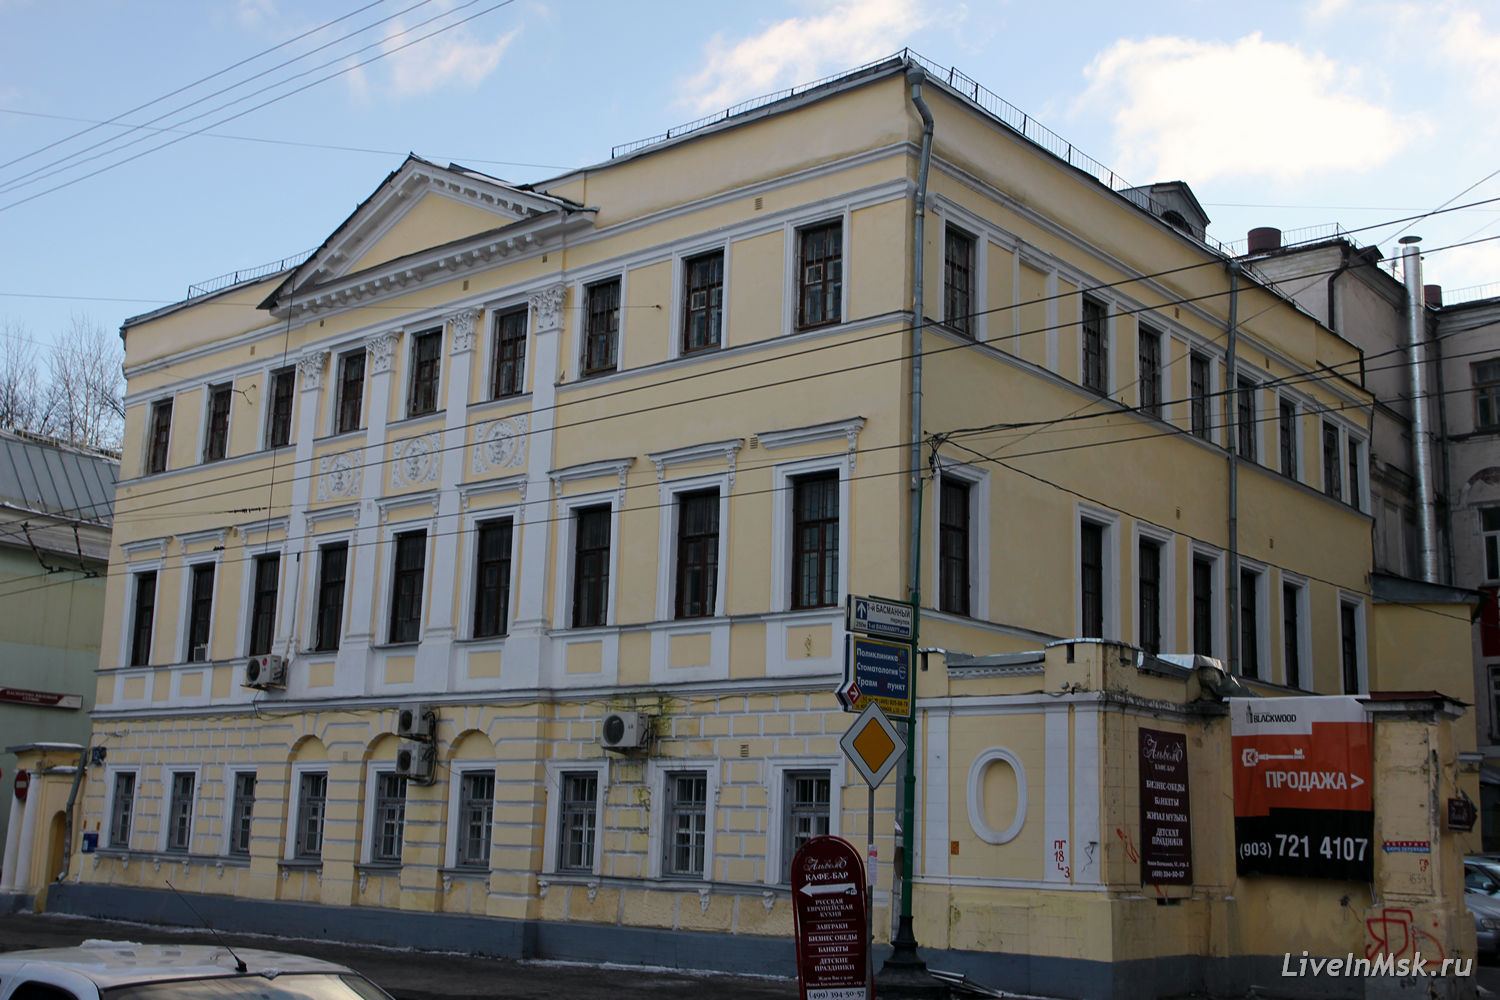 Дом Плещеева, фото 2014 года